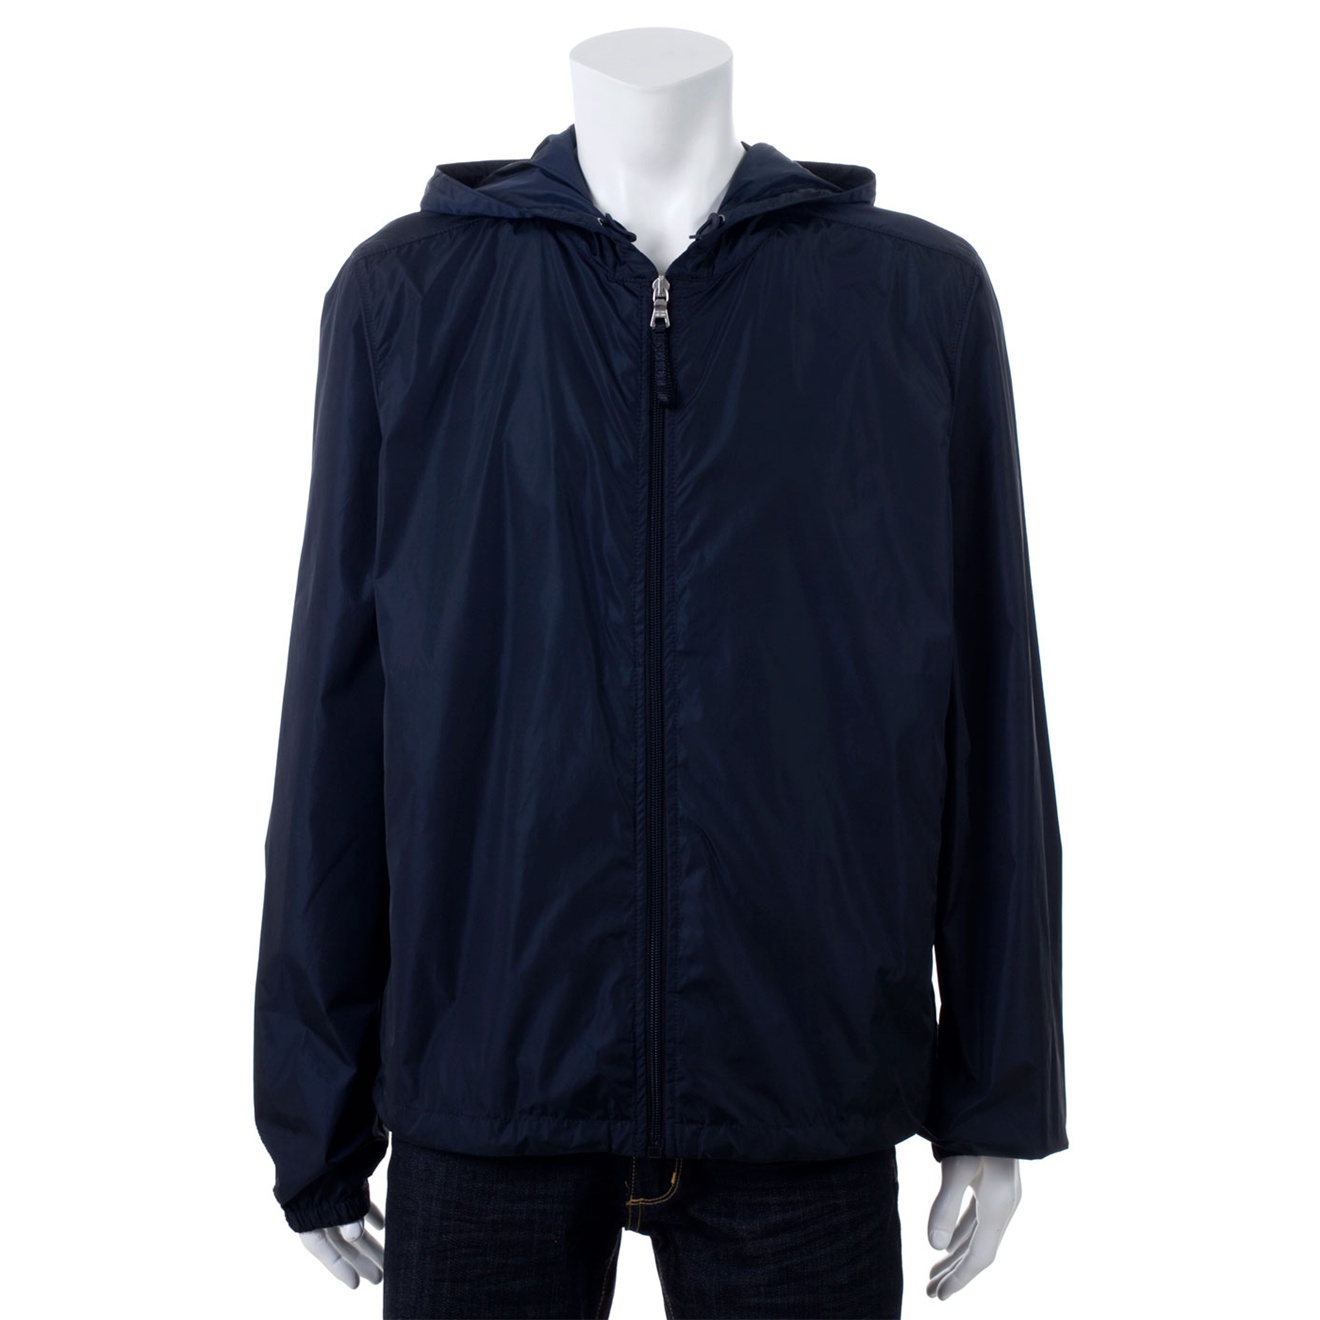 Prada Hooded Waterproof Jacket in Navy (Blue) for Men - Lyst